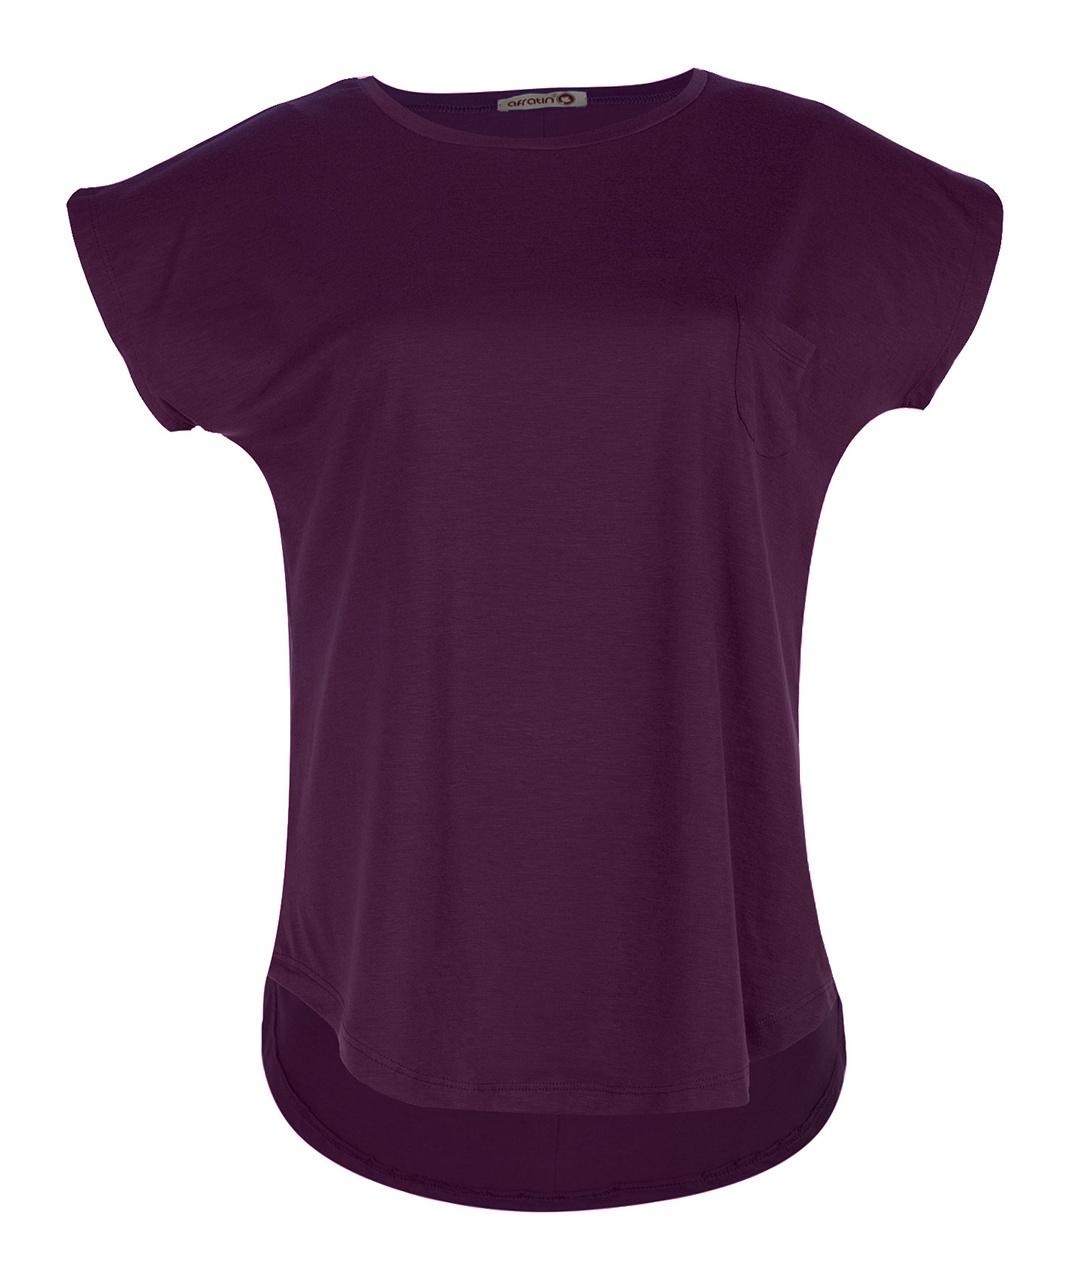 تی شرت زنانه افراتین کد2517 رنگ بادمجانی -  - 1